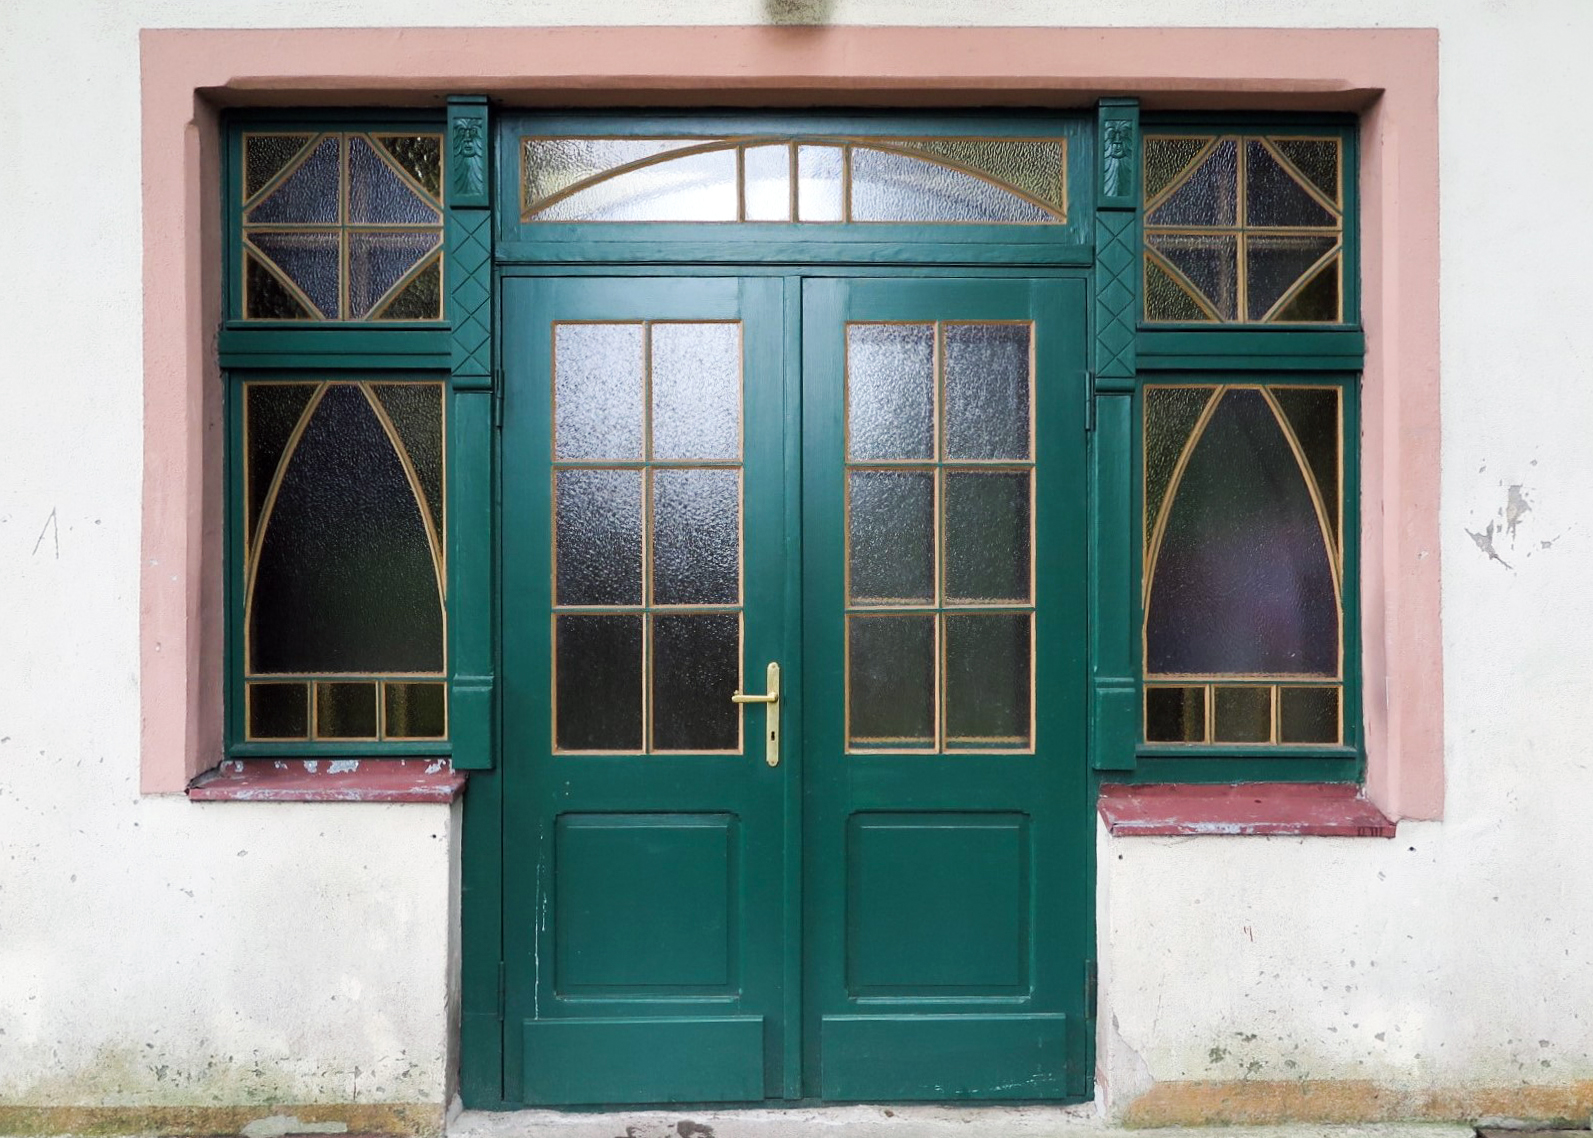 Drzwi do dworu Nowe Obłuże przy ul. Rybaków z początku XX w. ze zrekonstruowanym układem podziałów i odtworzeniem oryginalnego zielonego koloru.